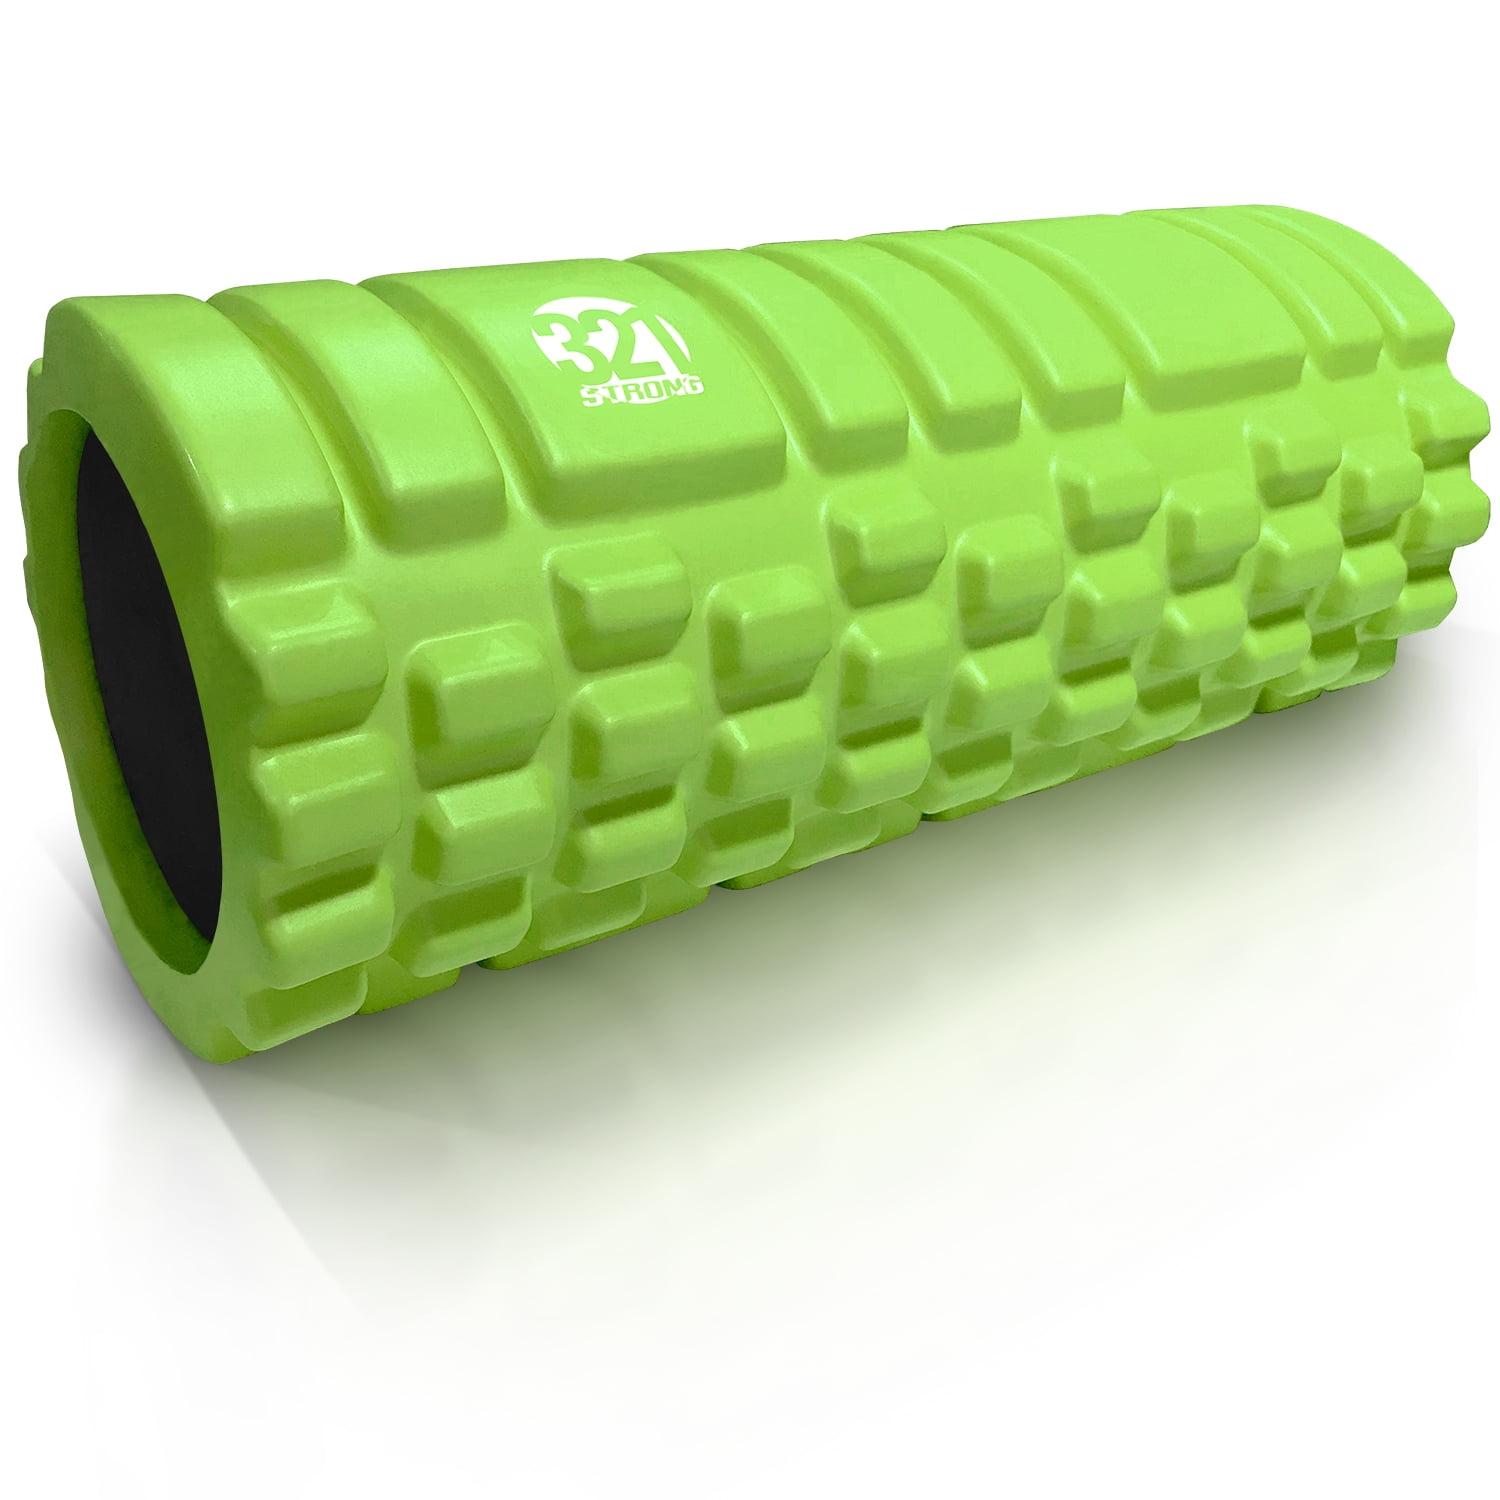 321 Strong Foam Roller Extra Firm High Density Deep Tissue Massager Lime Green 